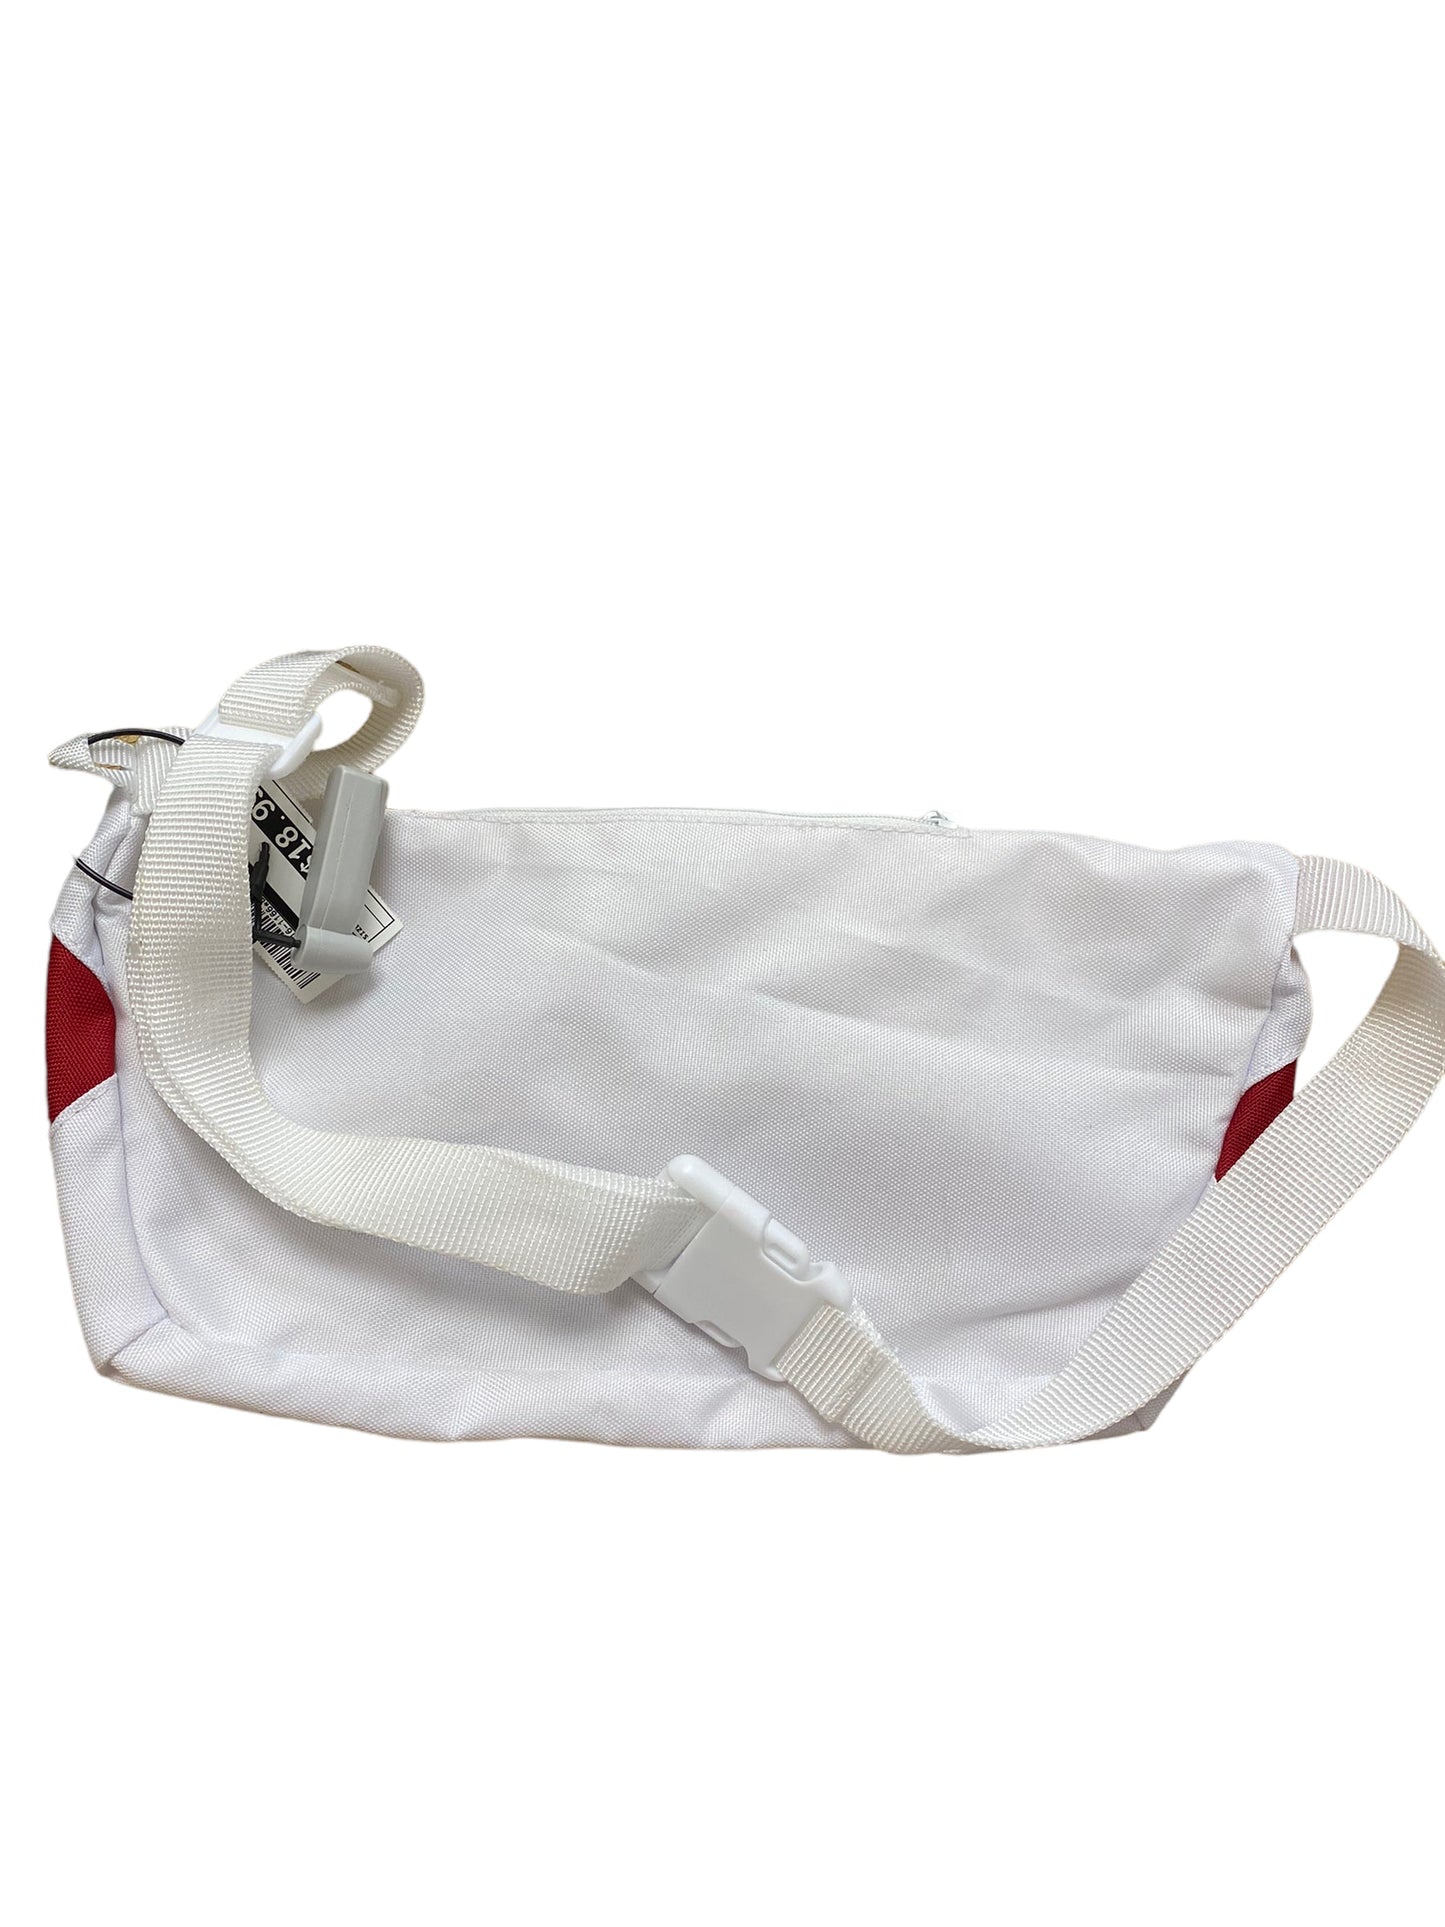 Belt Bag By Levis  Size: Large